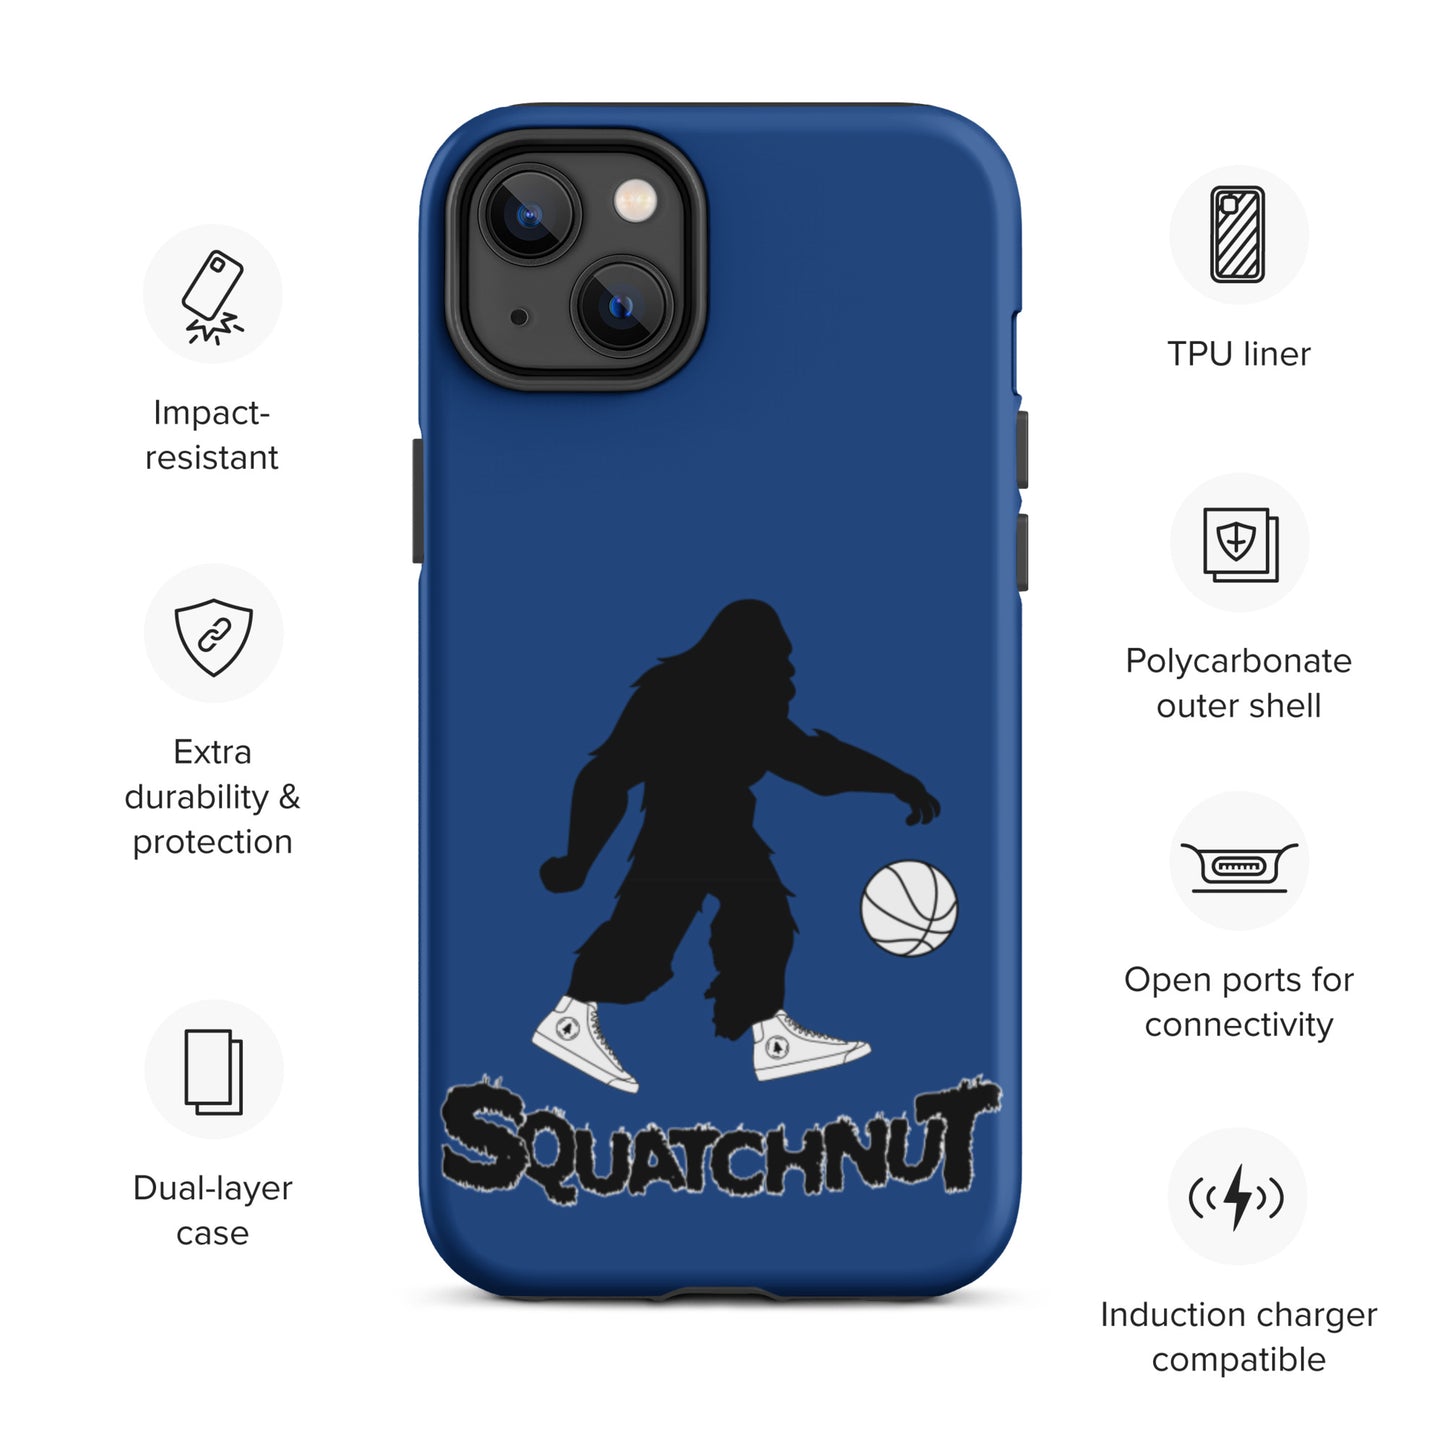 Basketball Tough iPhone case